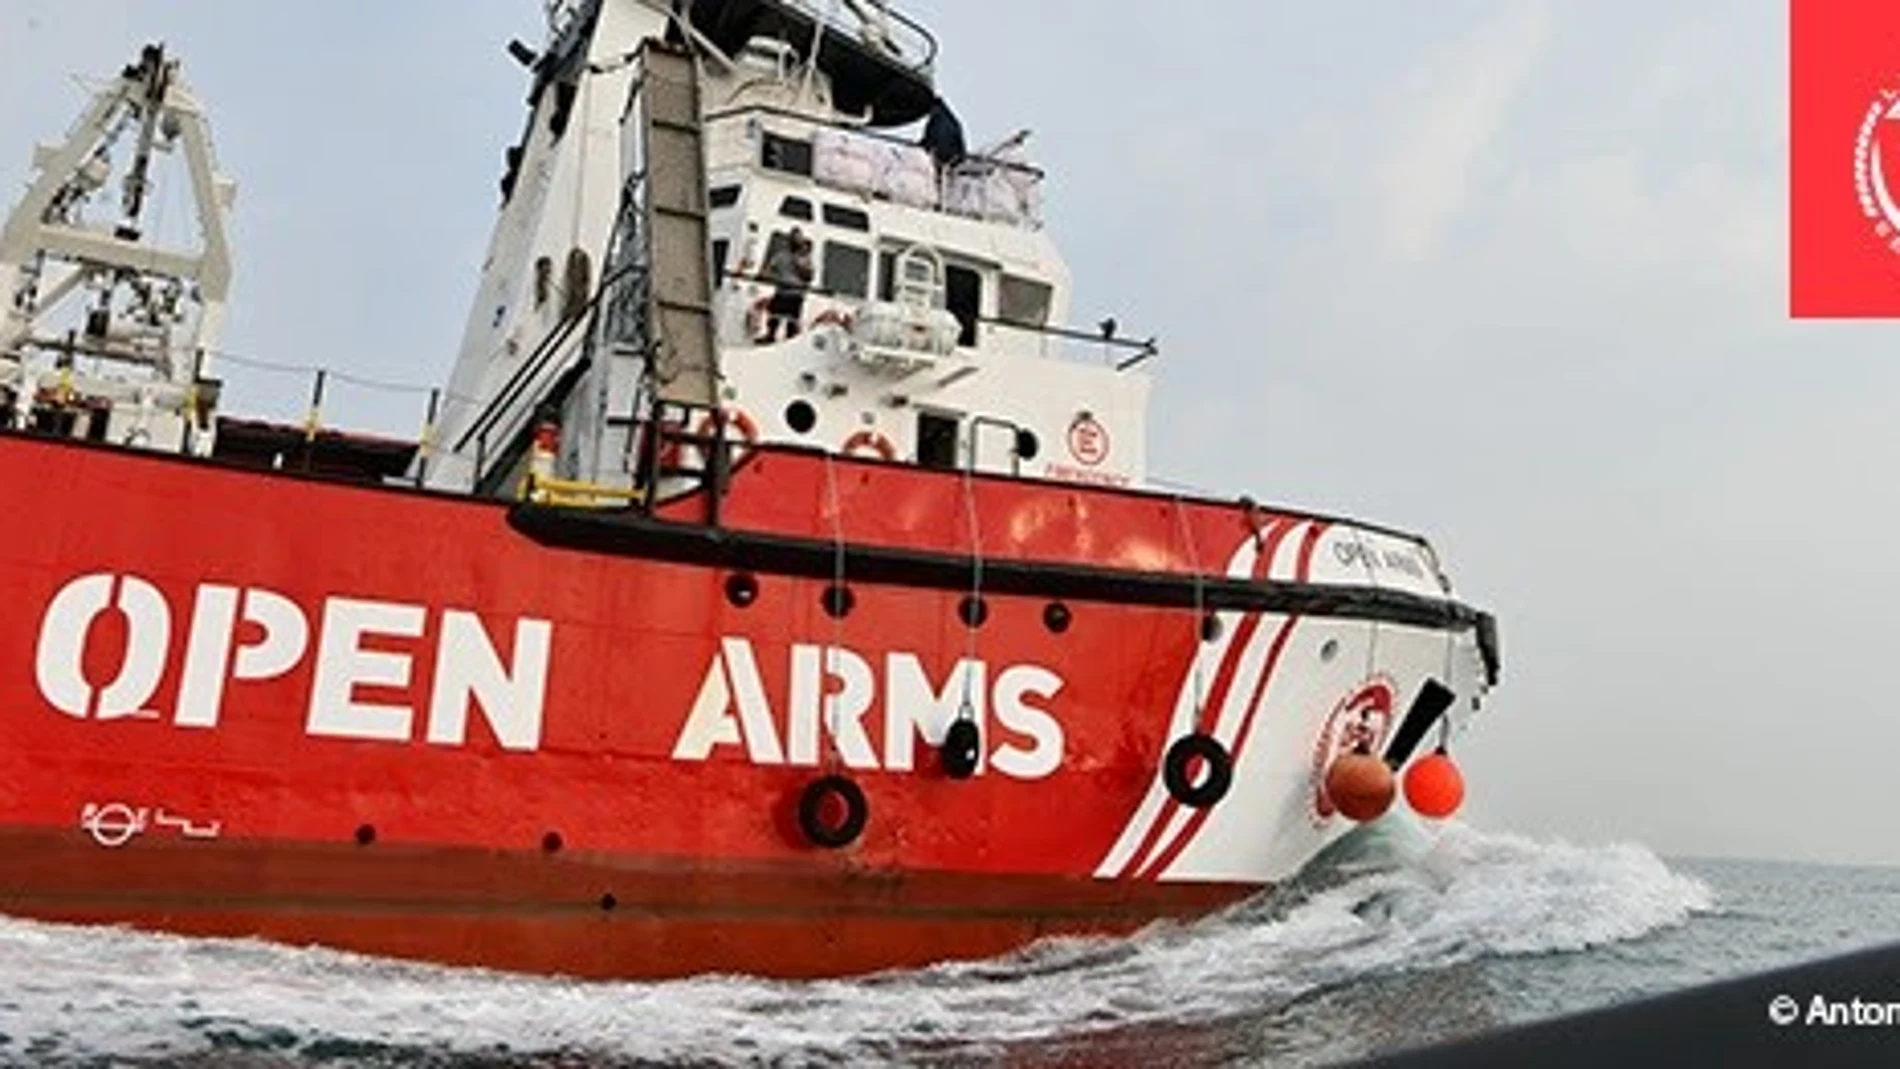 El Open Arms vuelve al Mediterráneo central tras 5 meses de "bloqueo administrativo" y reparaciones